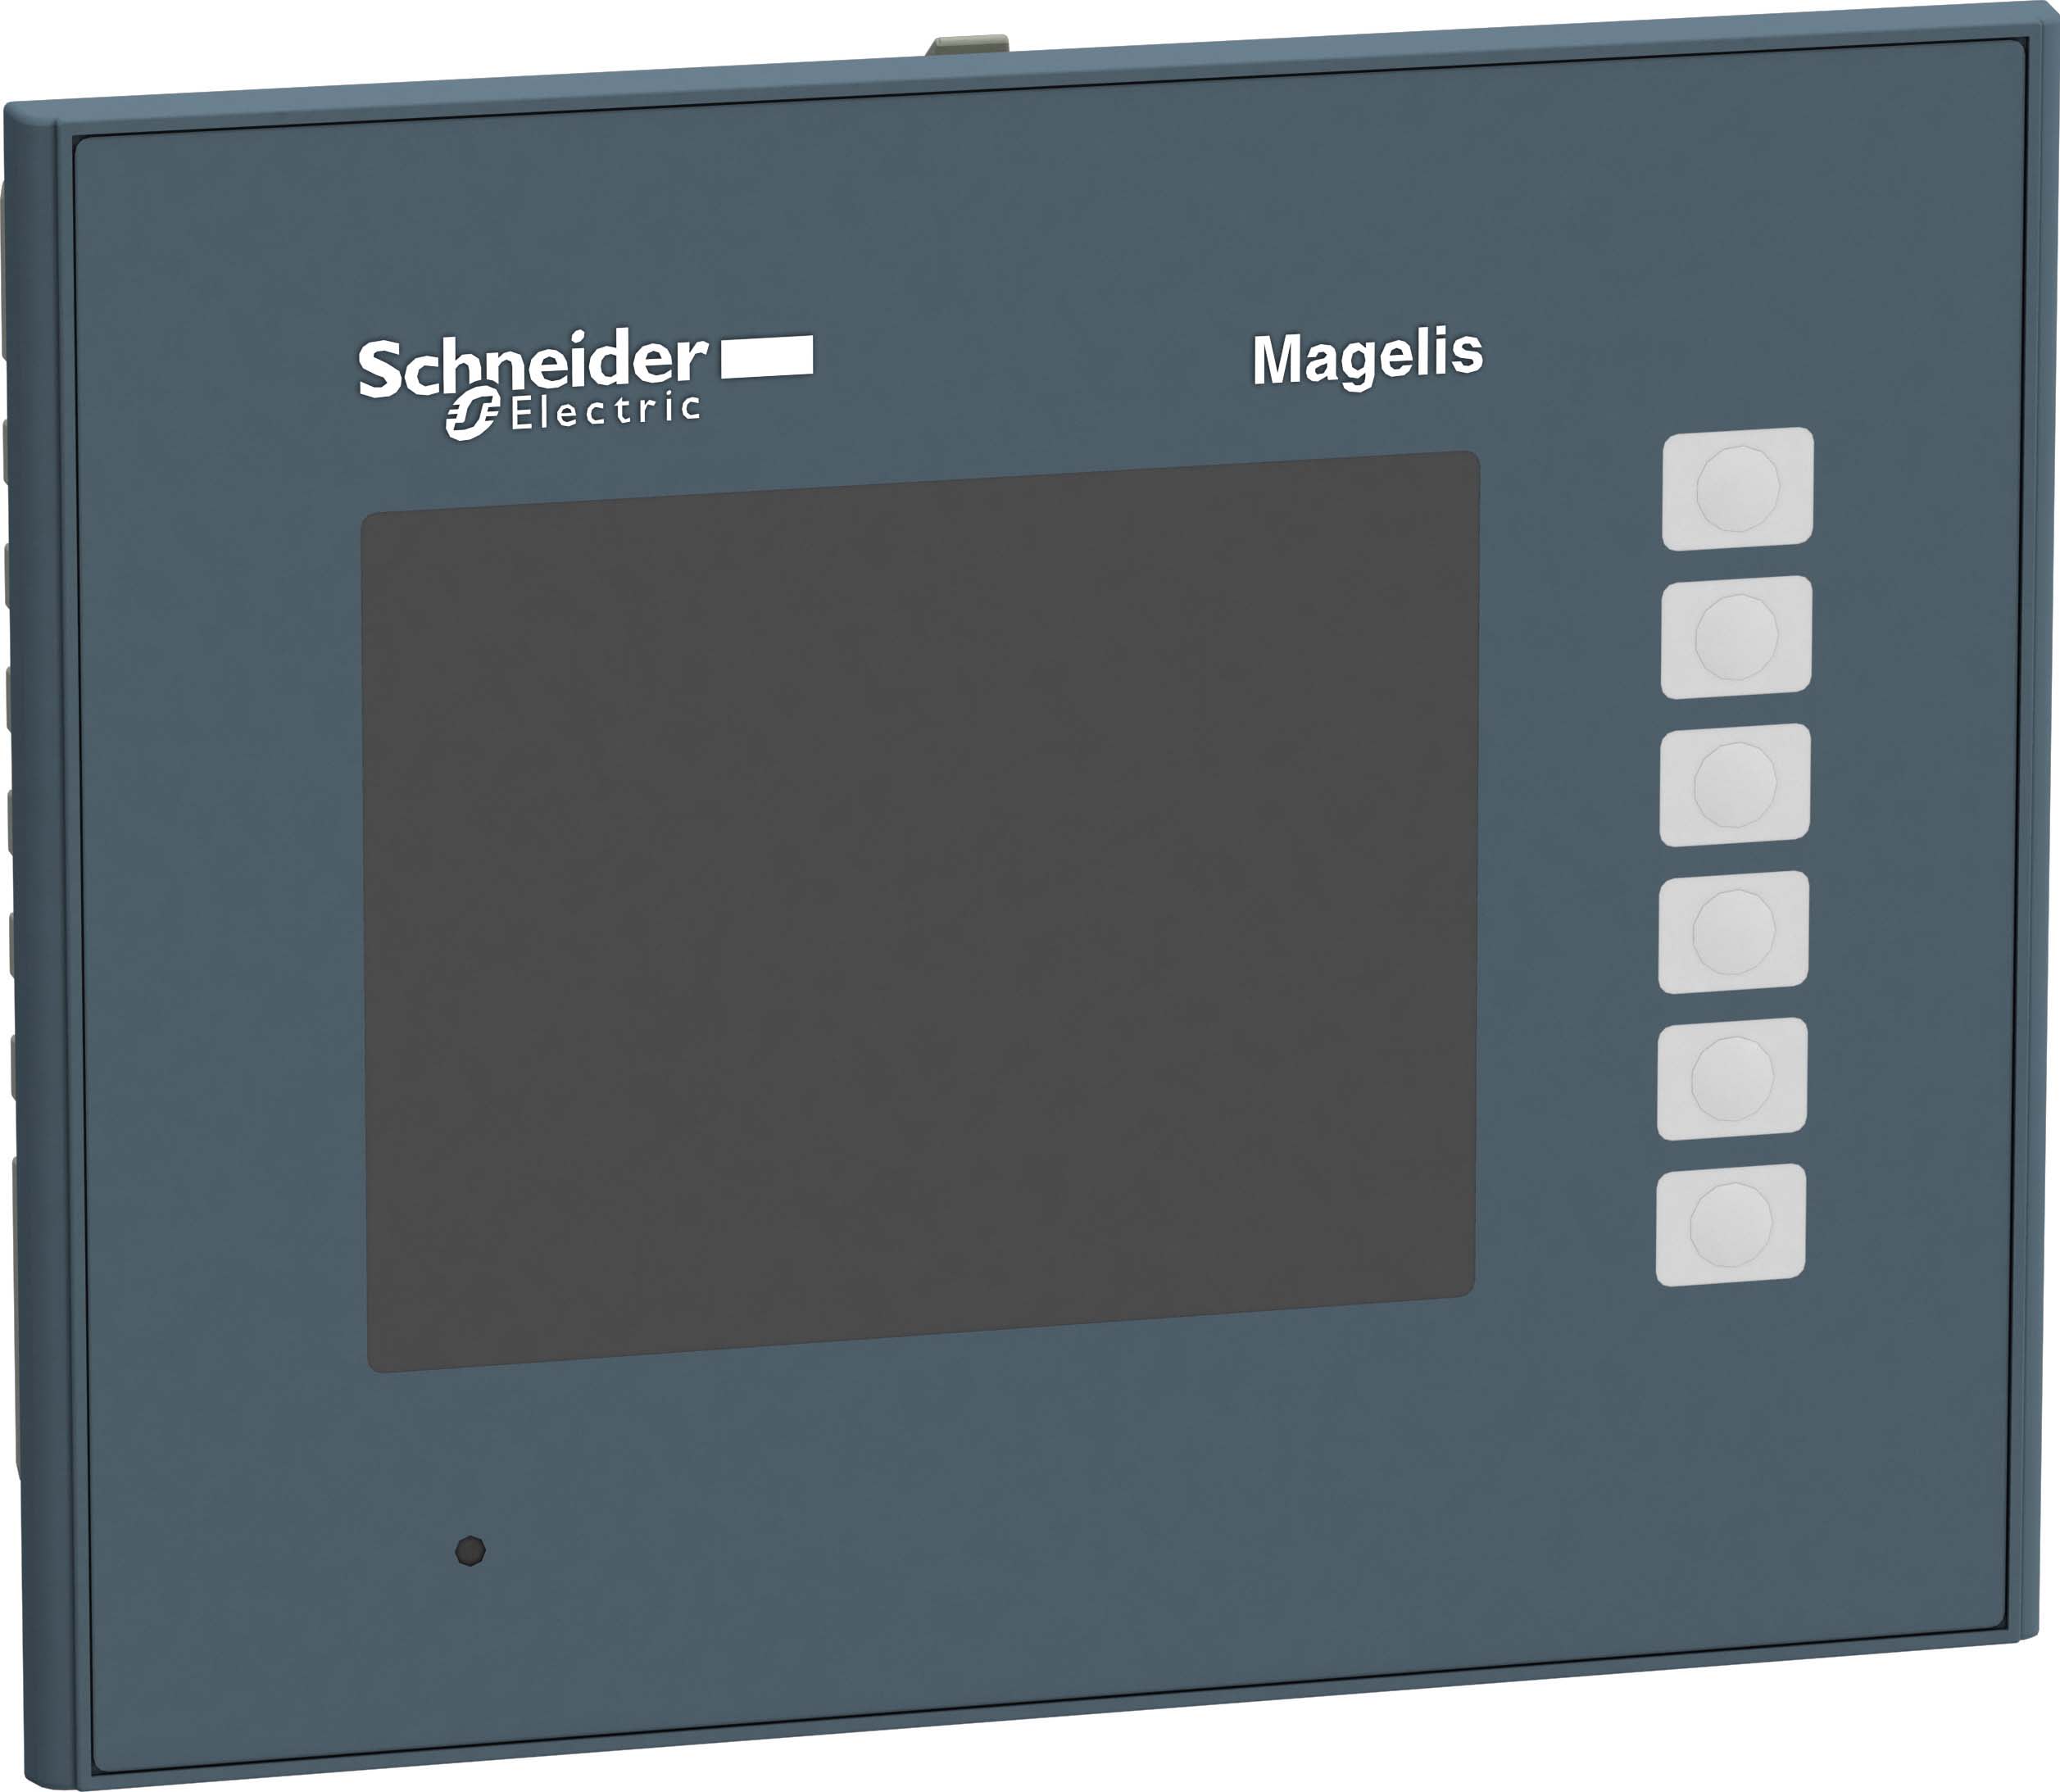 Schneider Electric - HMIGTO 10,4" TFT farveskjerm 640*480 punkter, Ethernet